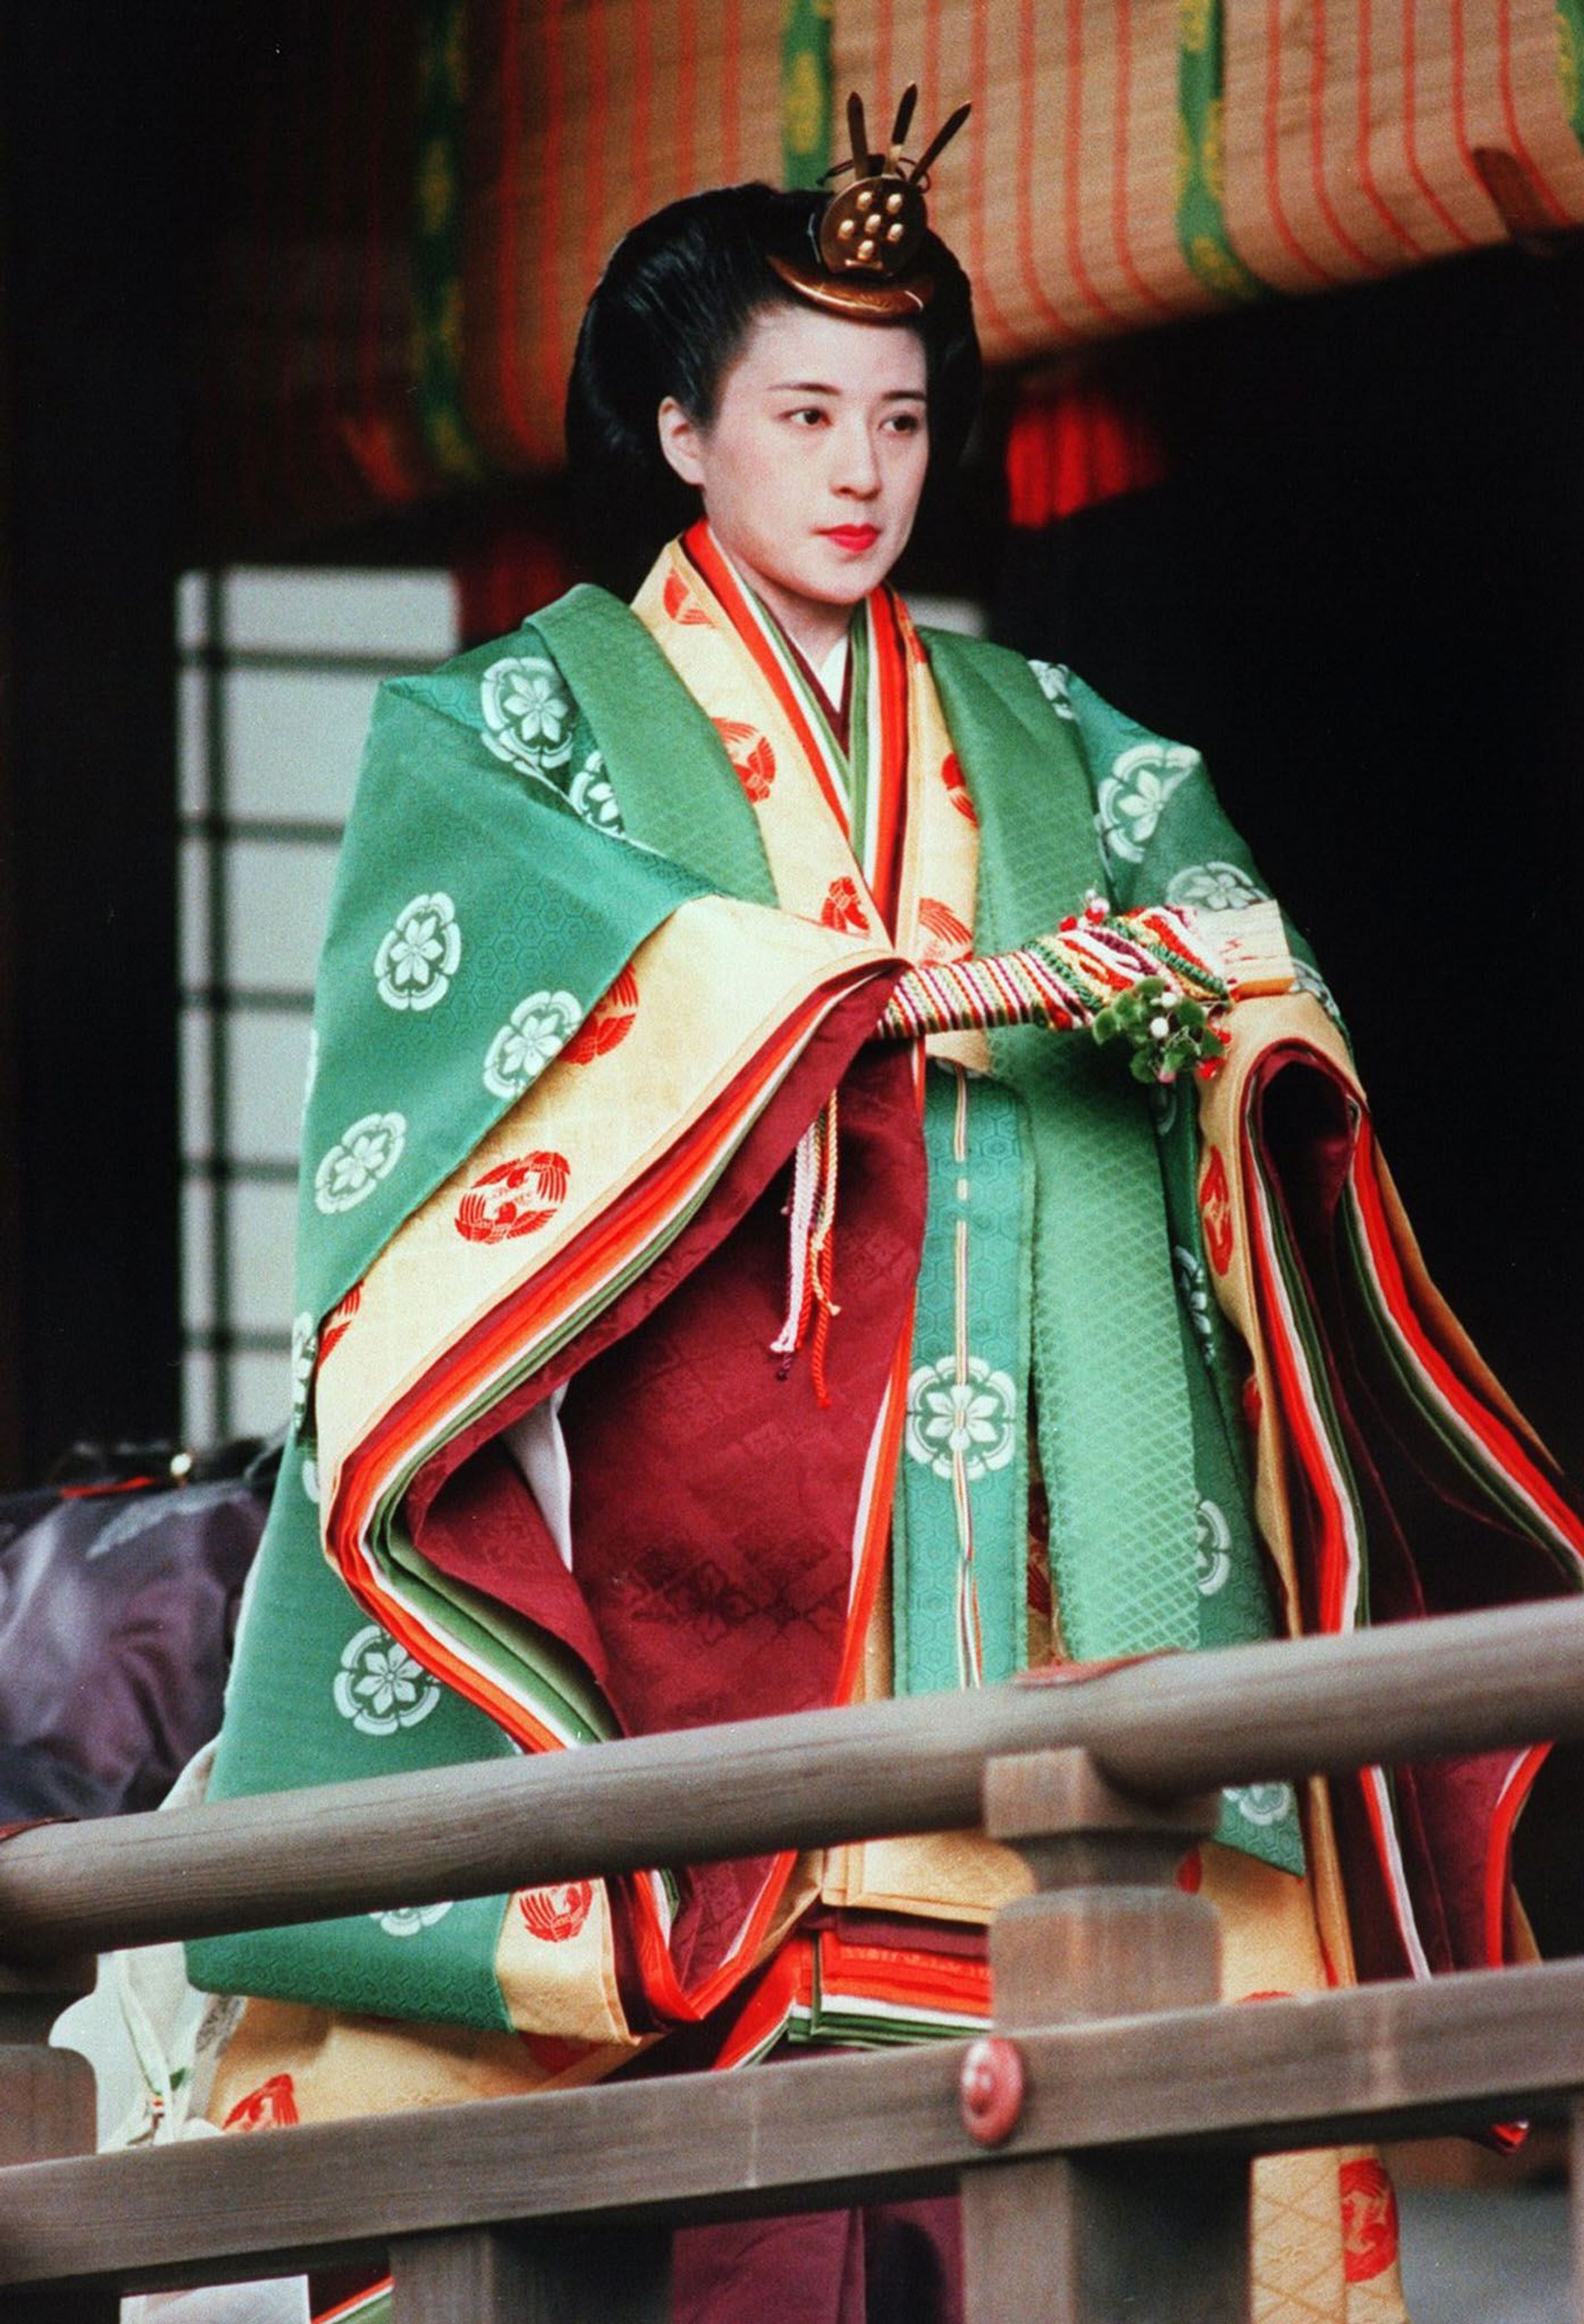 Masako_bride_costume_1993.jpg